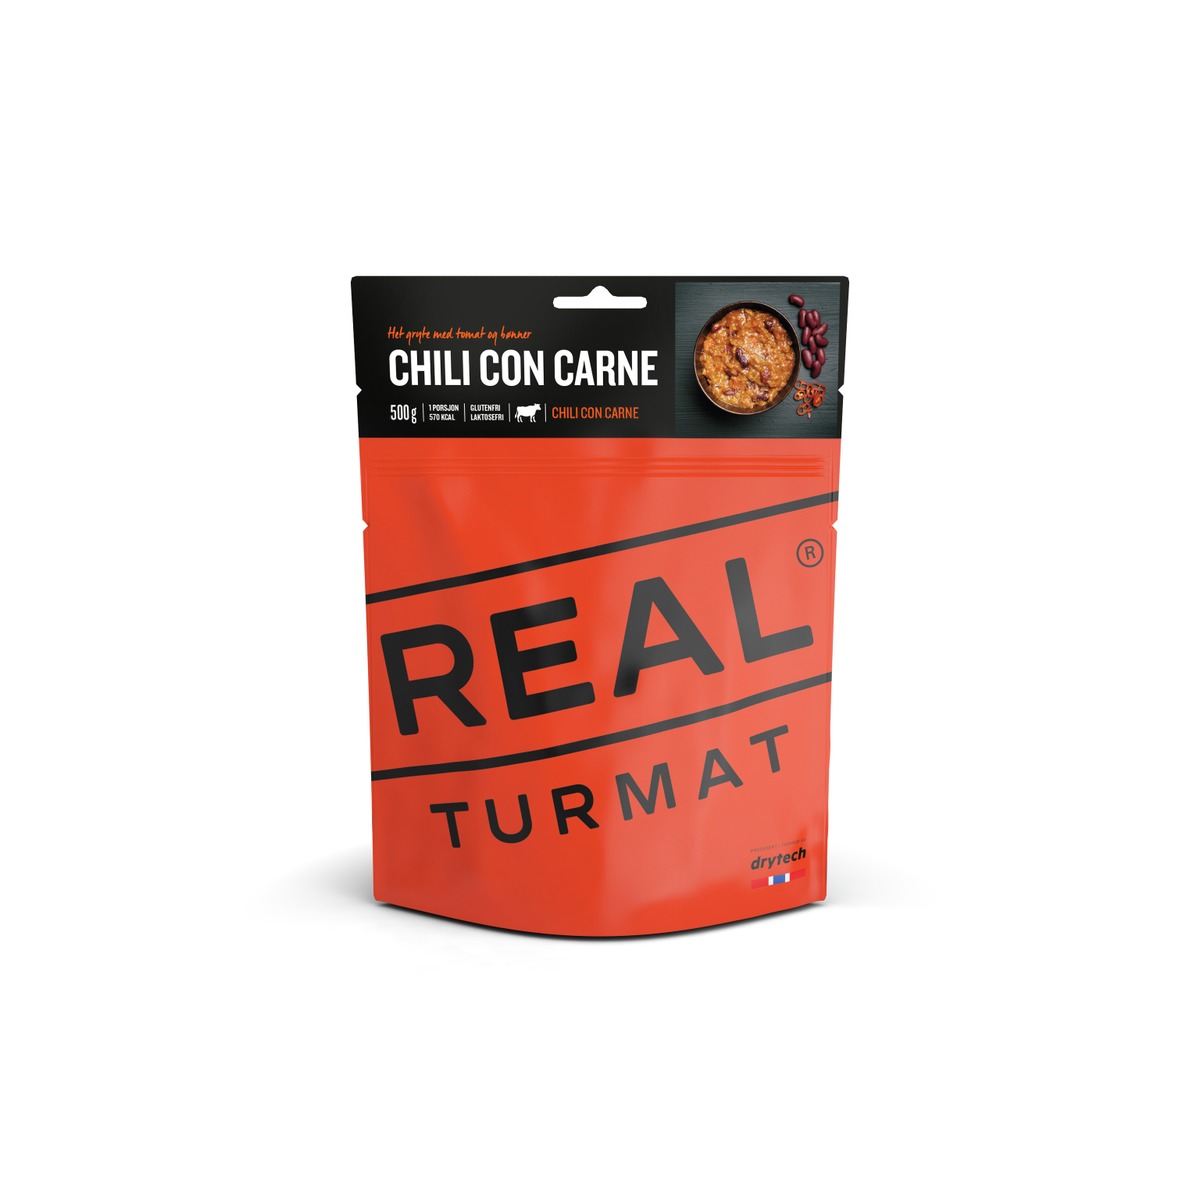 Real turmat Chili Con Carne 500Gram